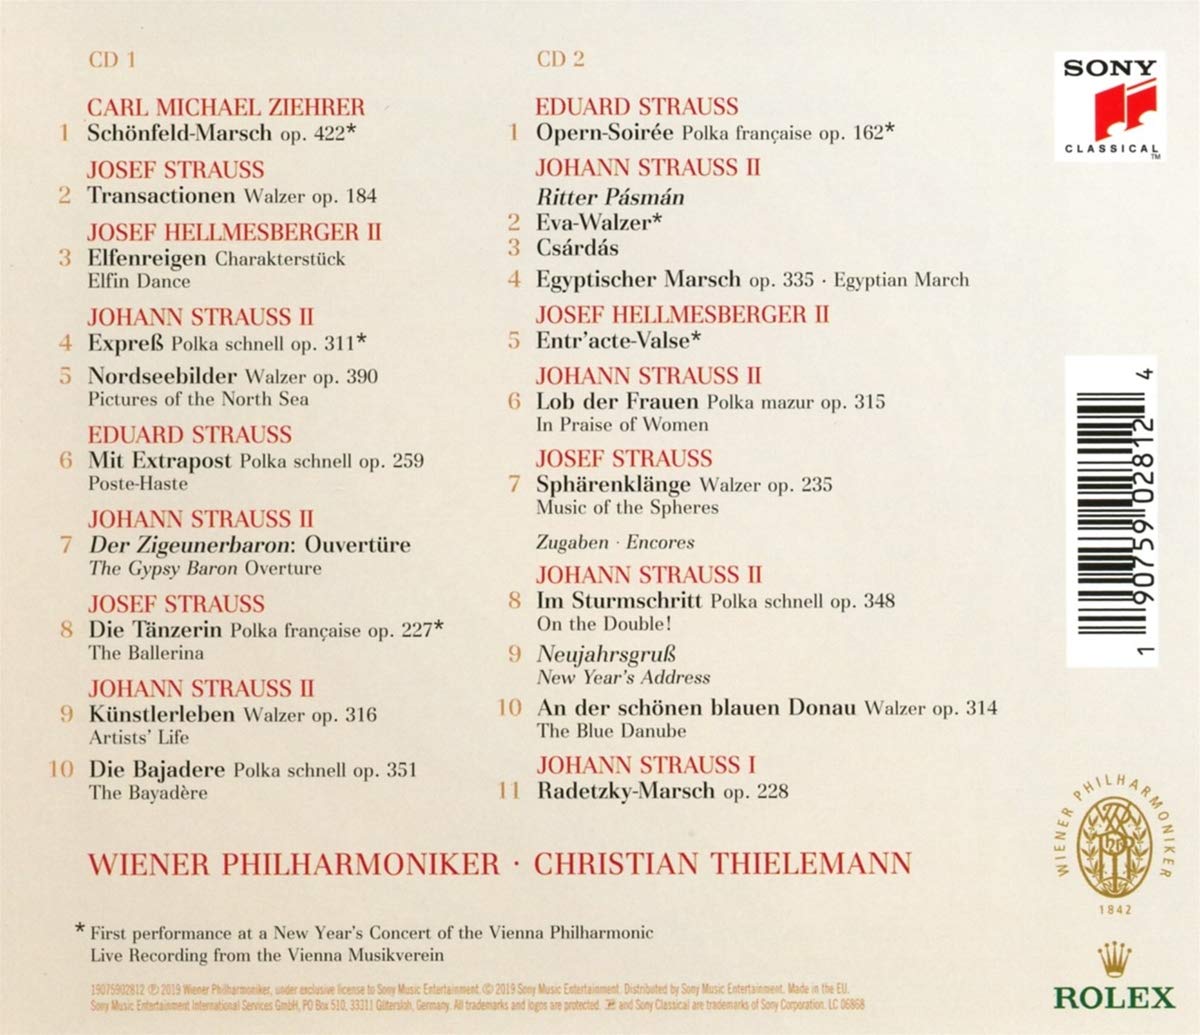 Neujahrskonzert | Christian Thielemann, Wiener Philharmoniker image8